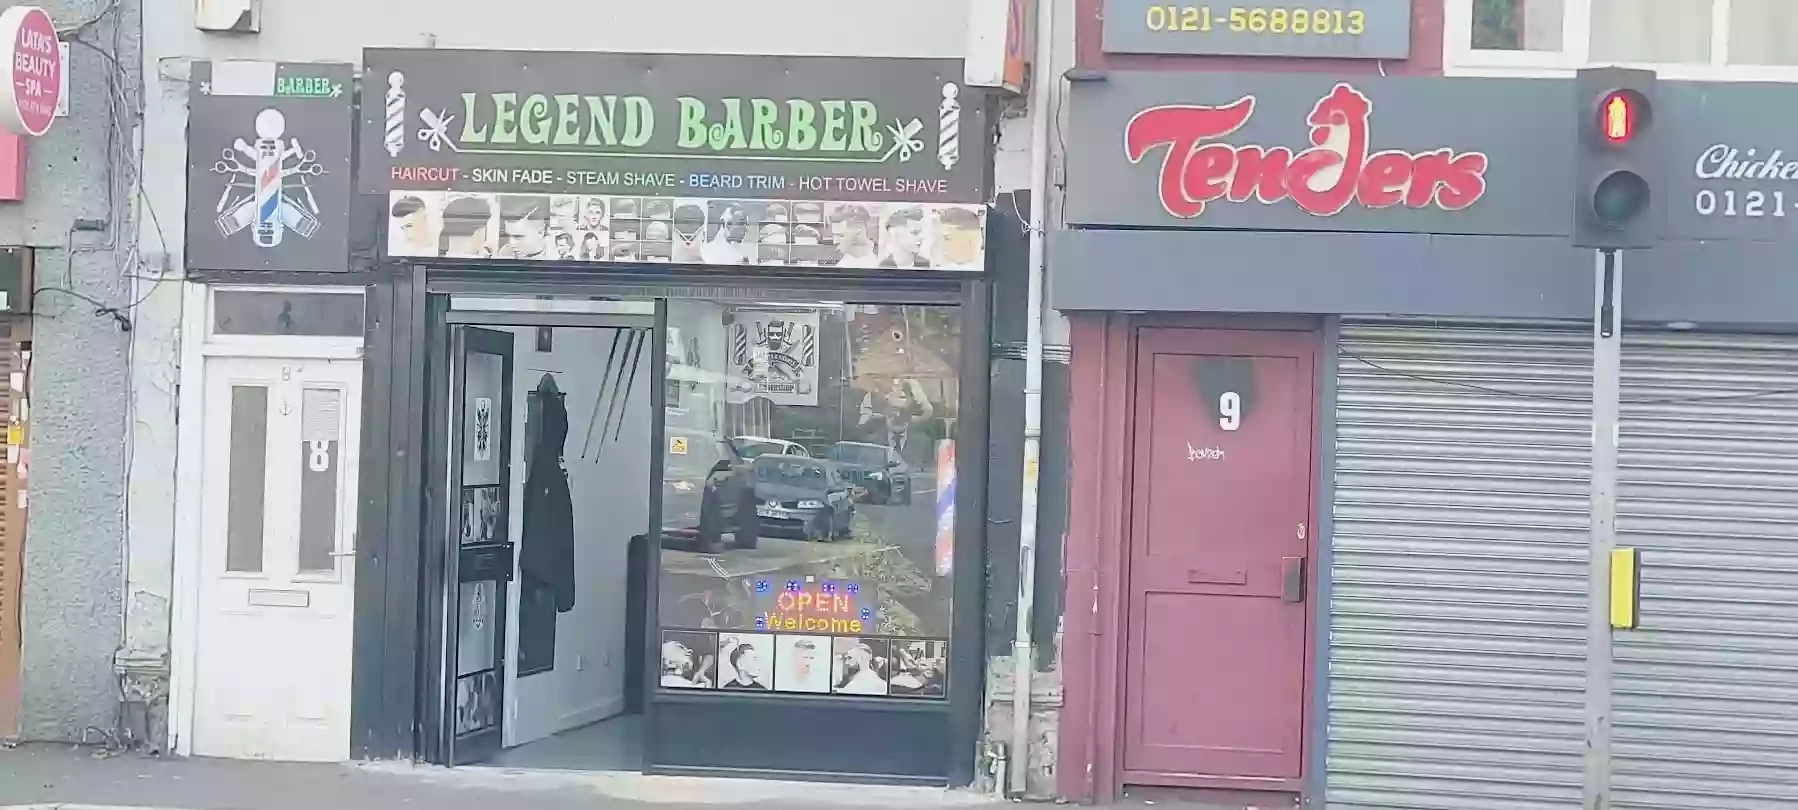 Legend barber